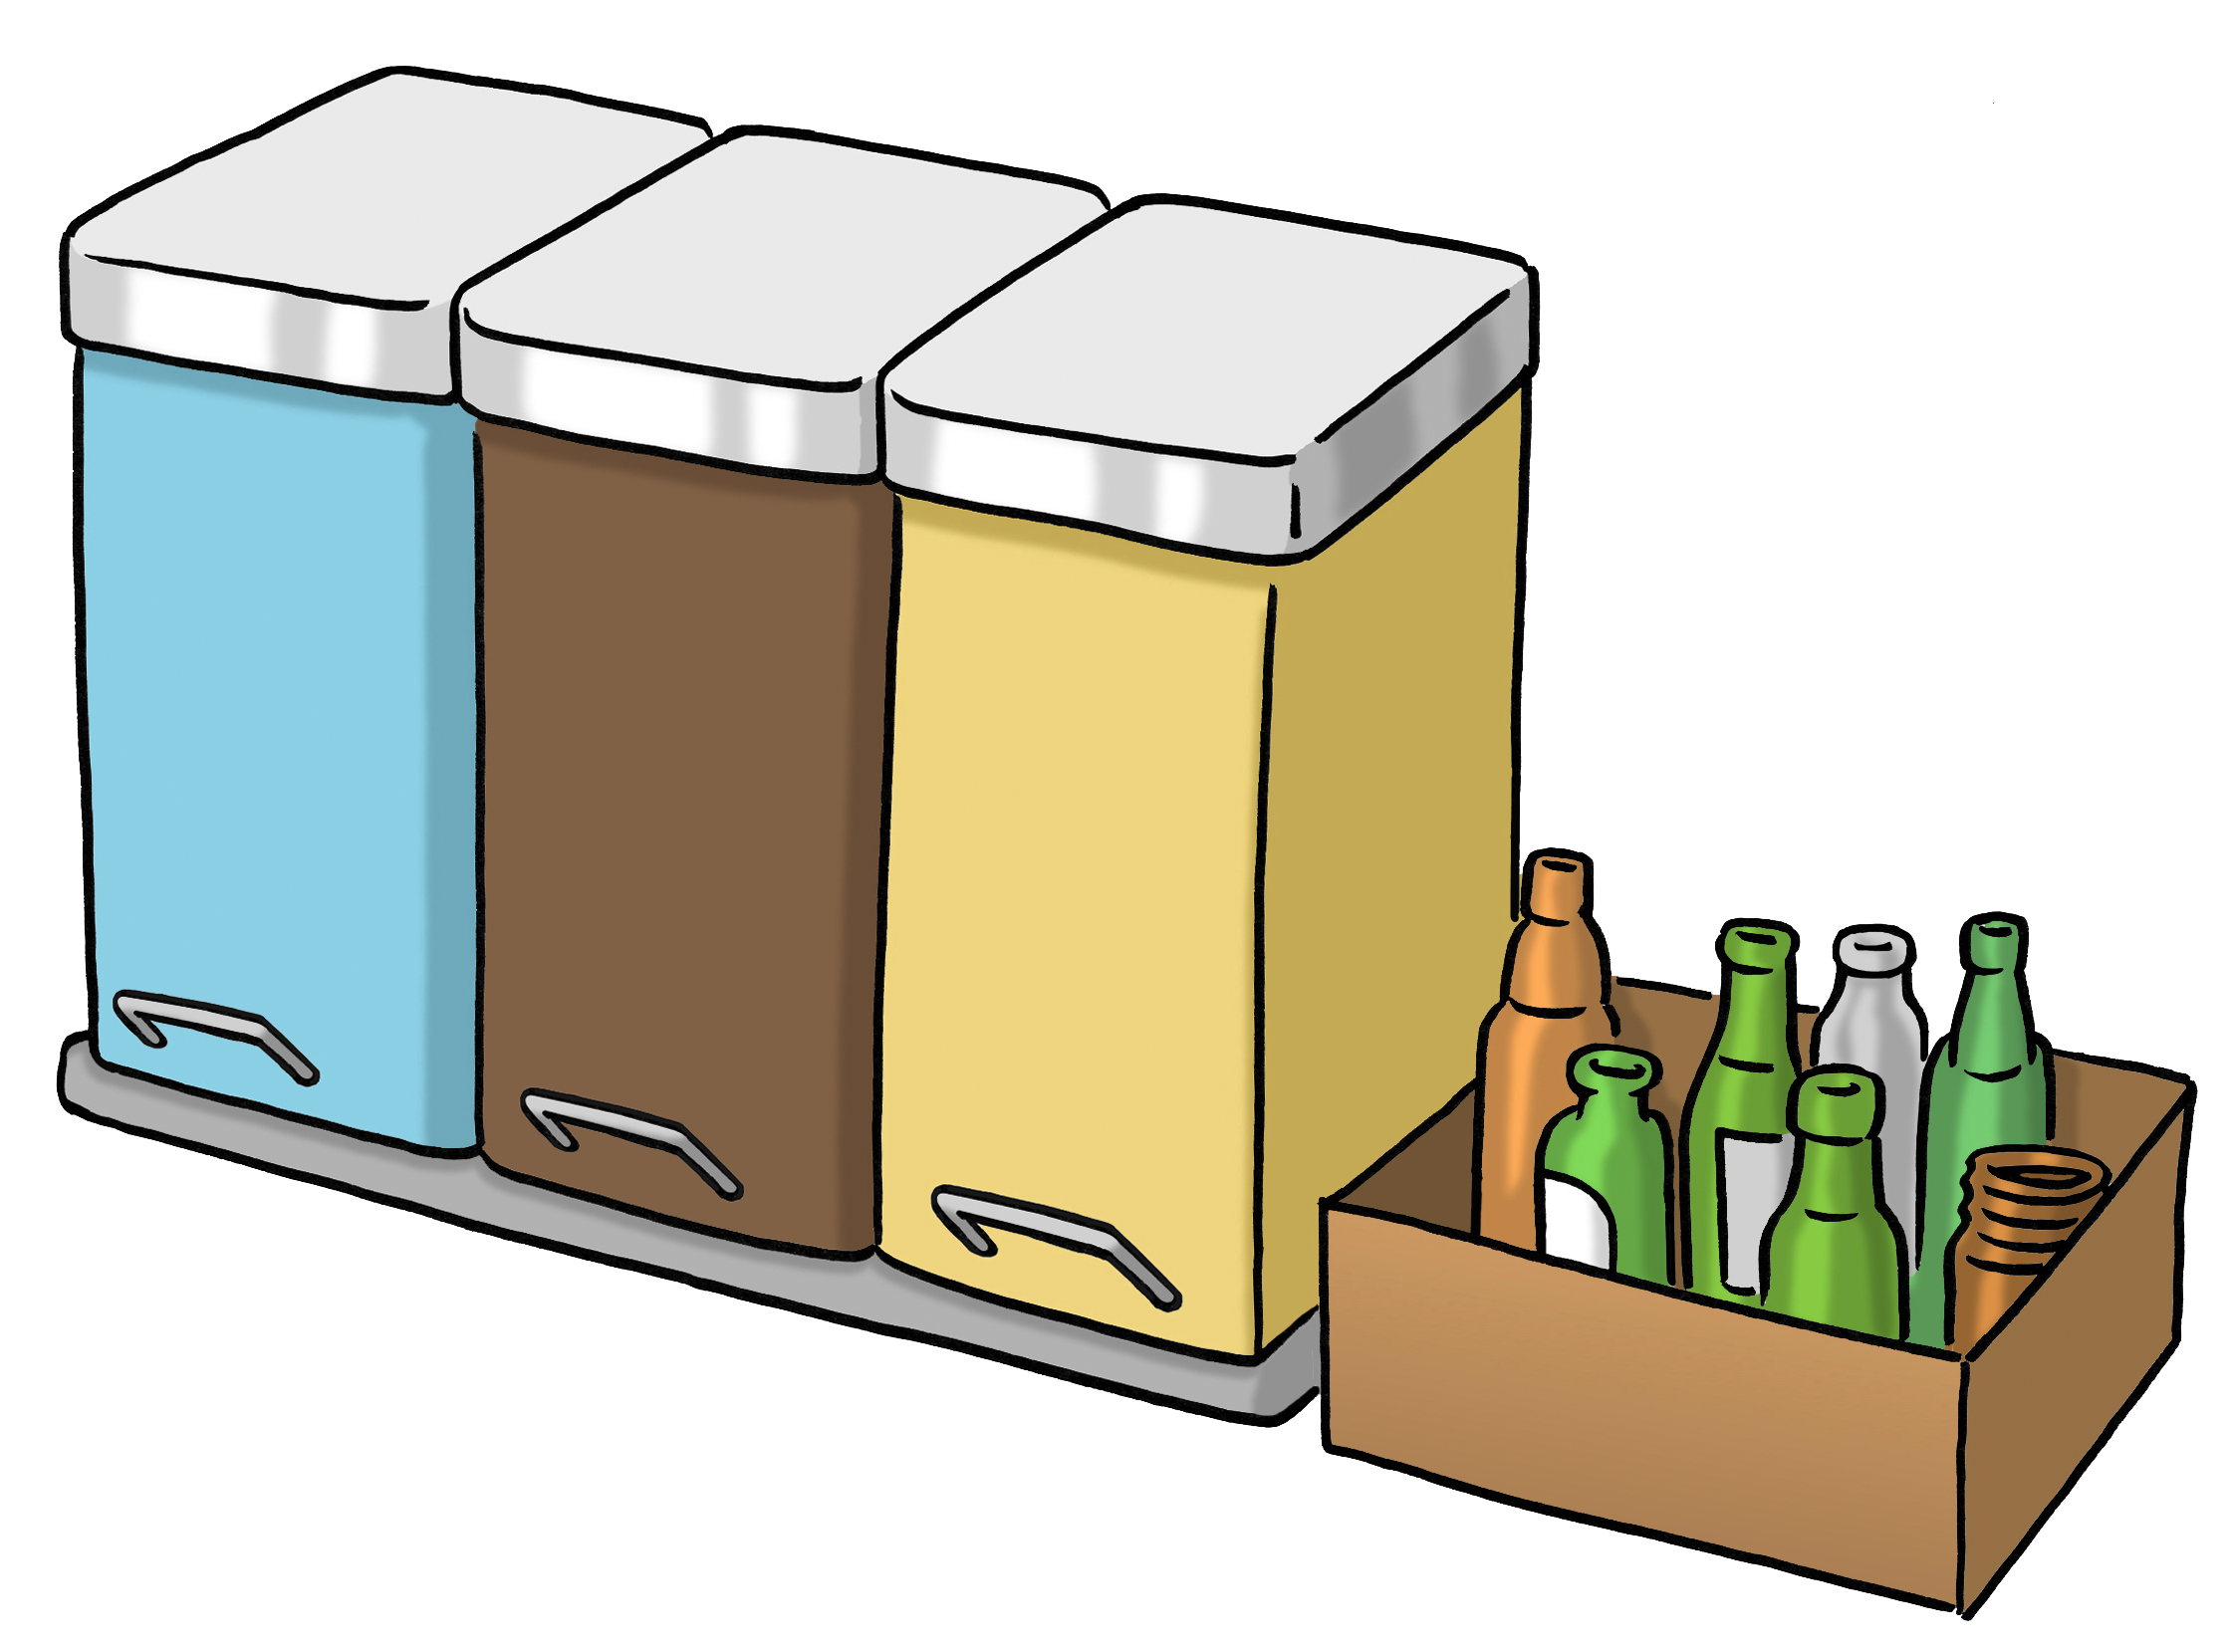 Leichte Sprache Bild: eine blaue, braune und gelbe Mülltonne nebeneinander, danneben ein Karton mit Altglas